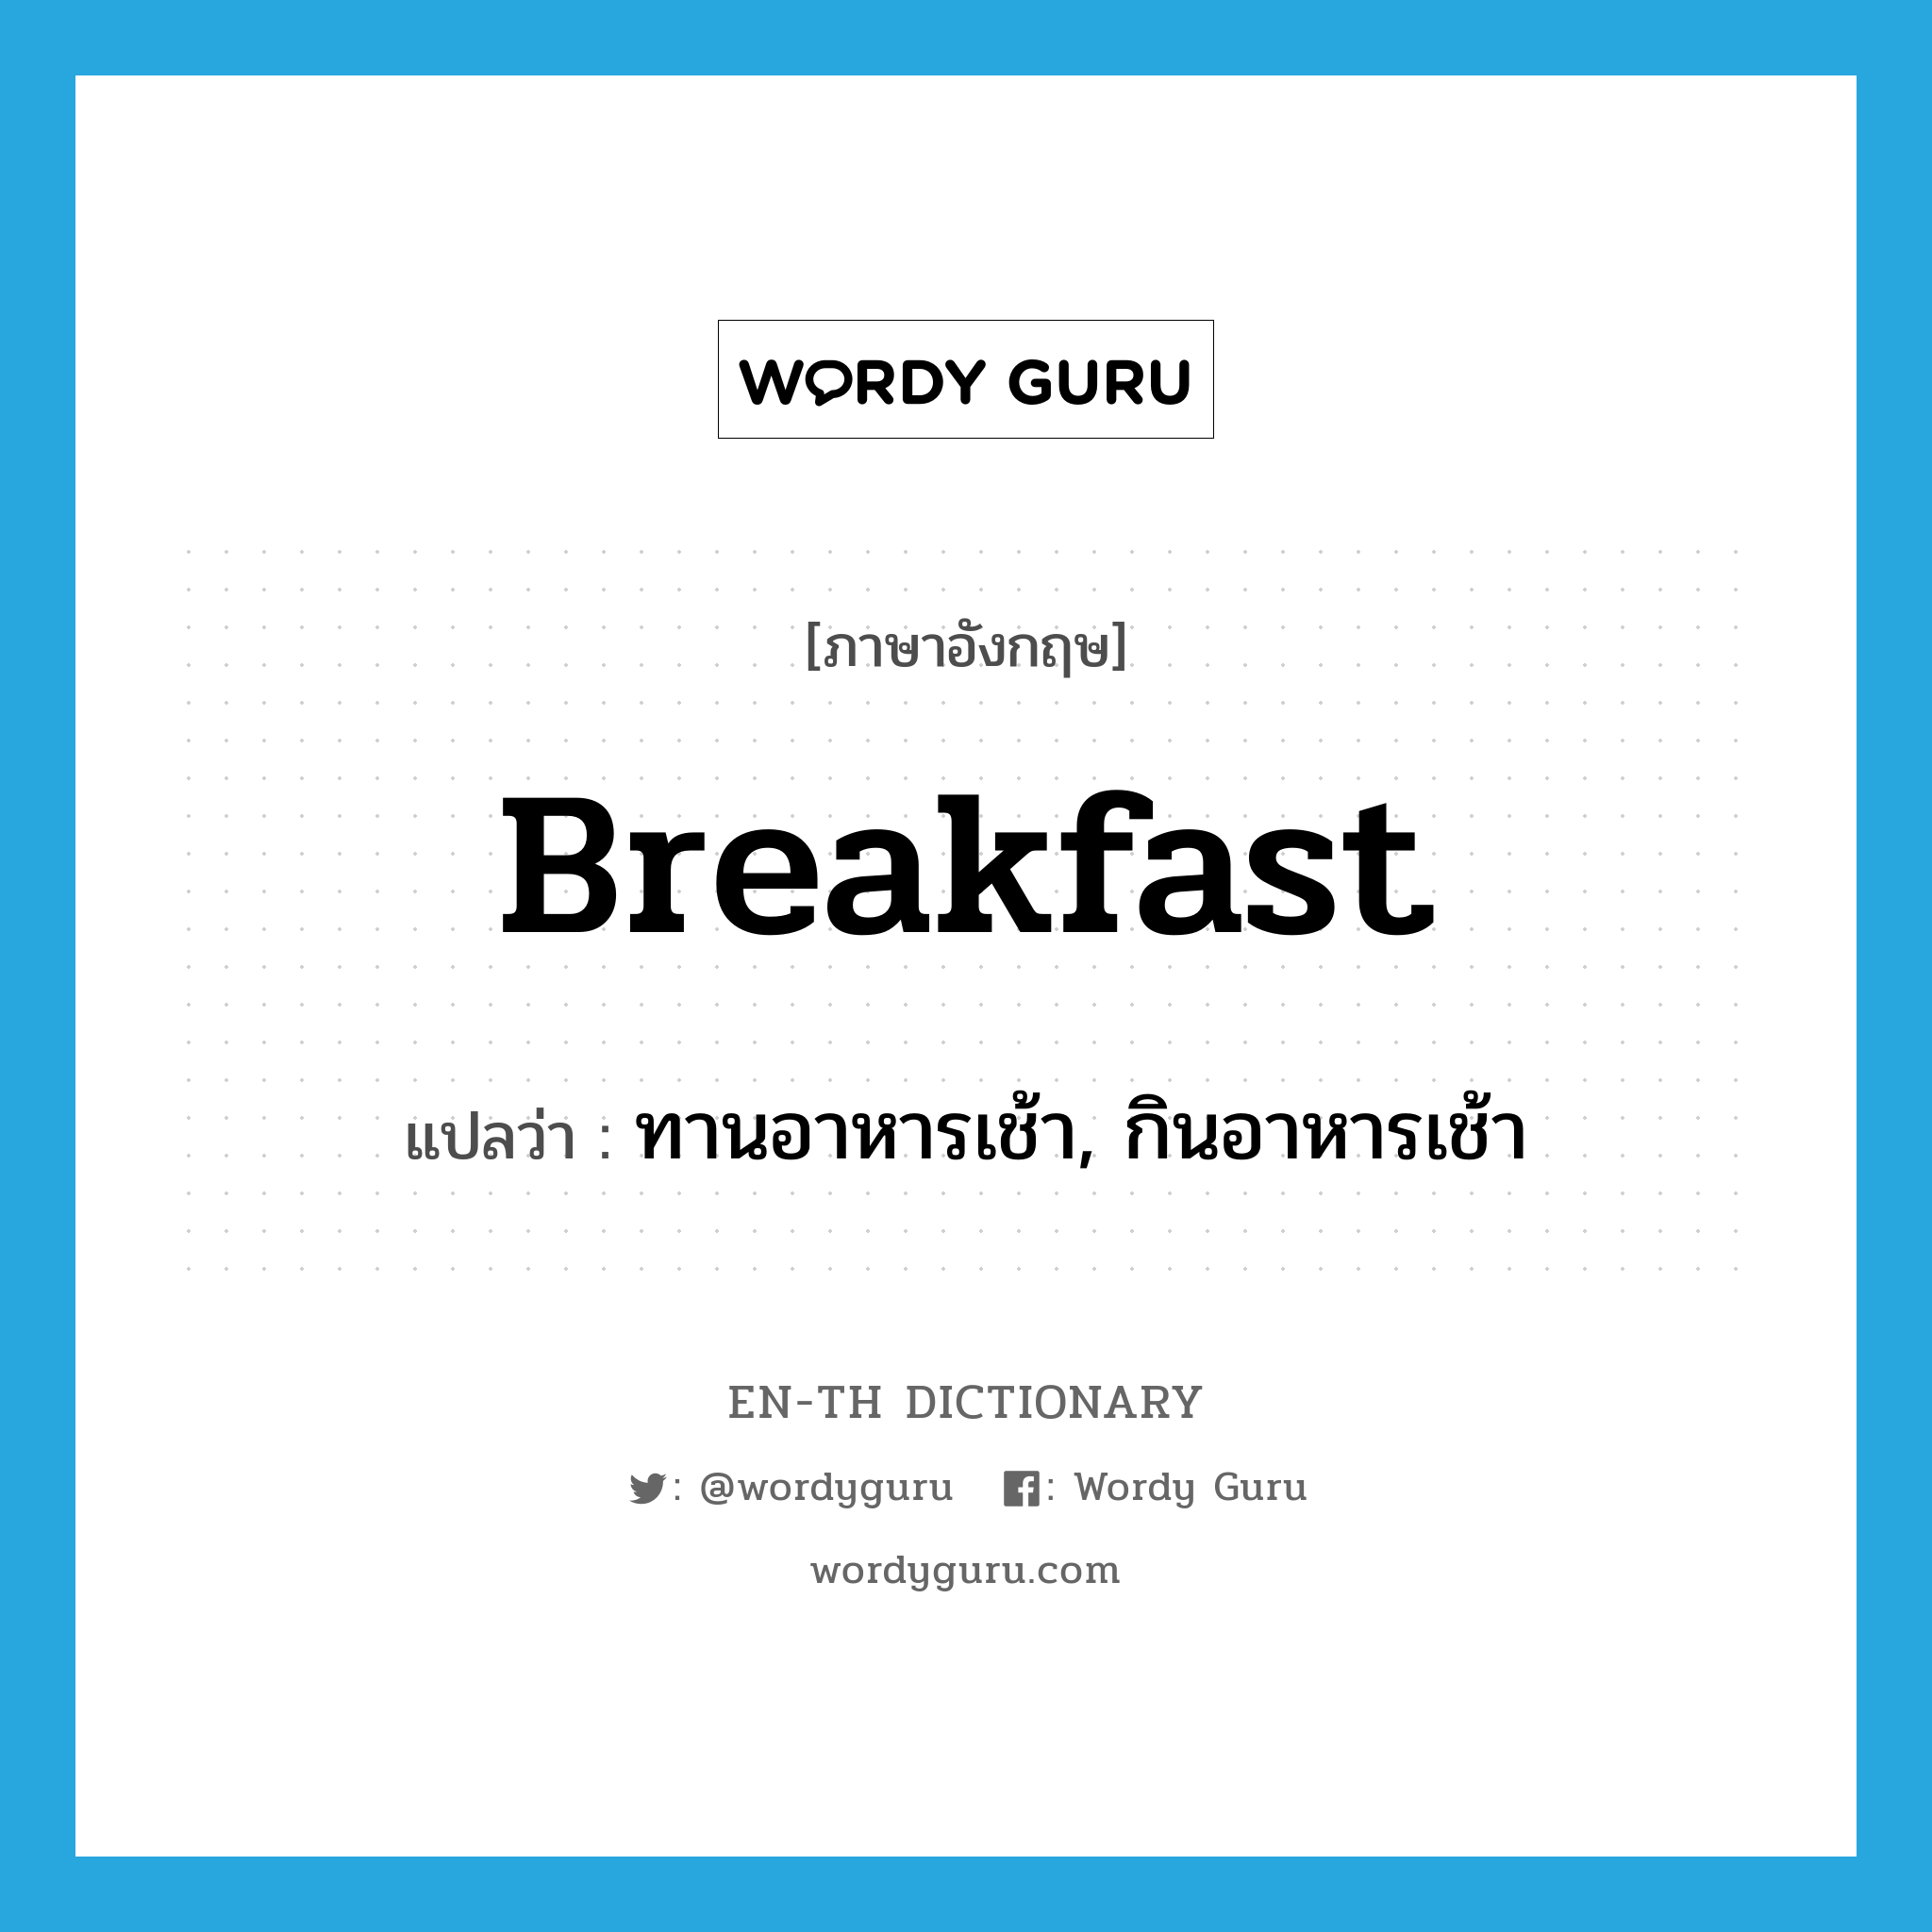 ทานอาหารเช้า, กินอาหารเช้า ภาษาอังกฤษ?, คำศัพท์ภาษาอังกฤษ ทานอาหารเช้า, กินอาหารเช้า แปลว่า breakfast ประเภท VI หมวด VI